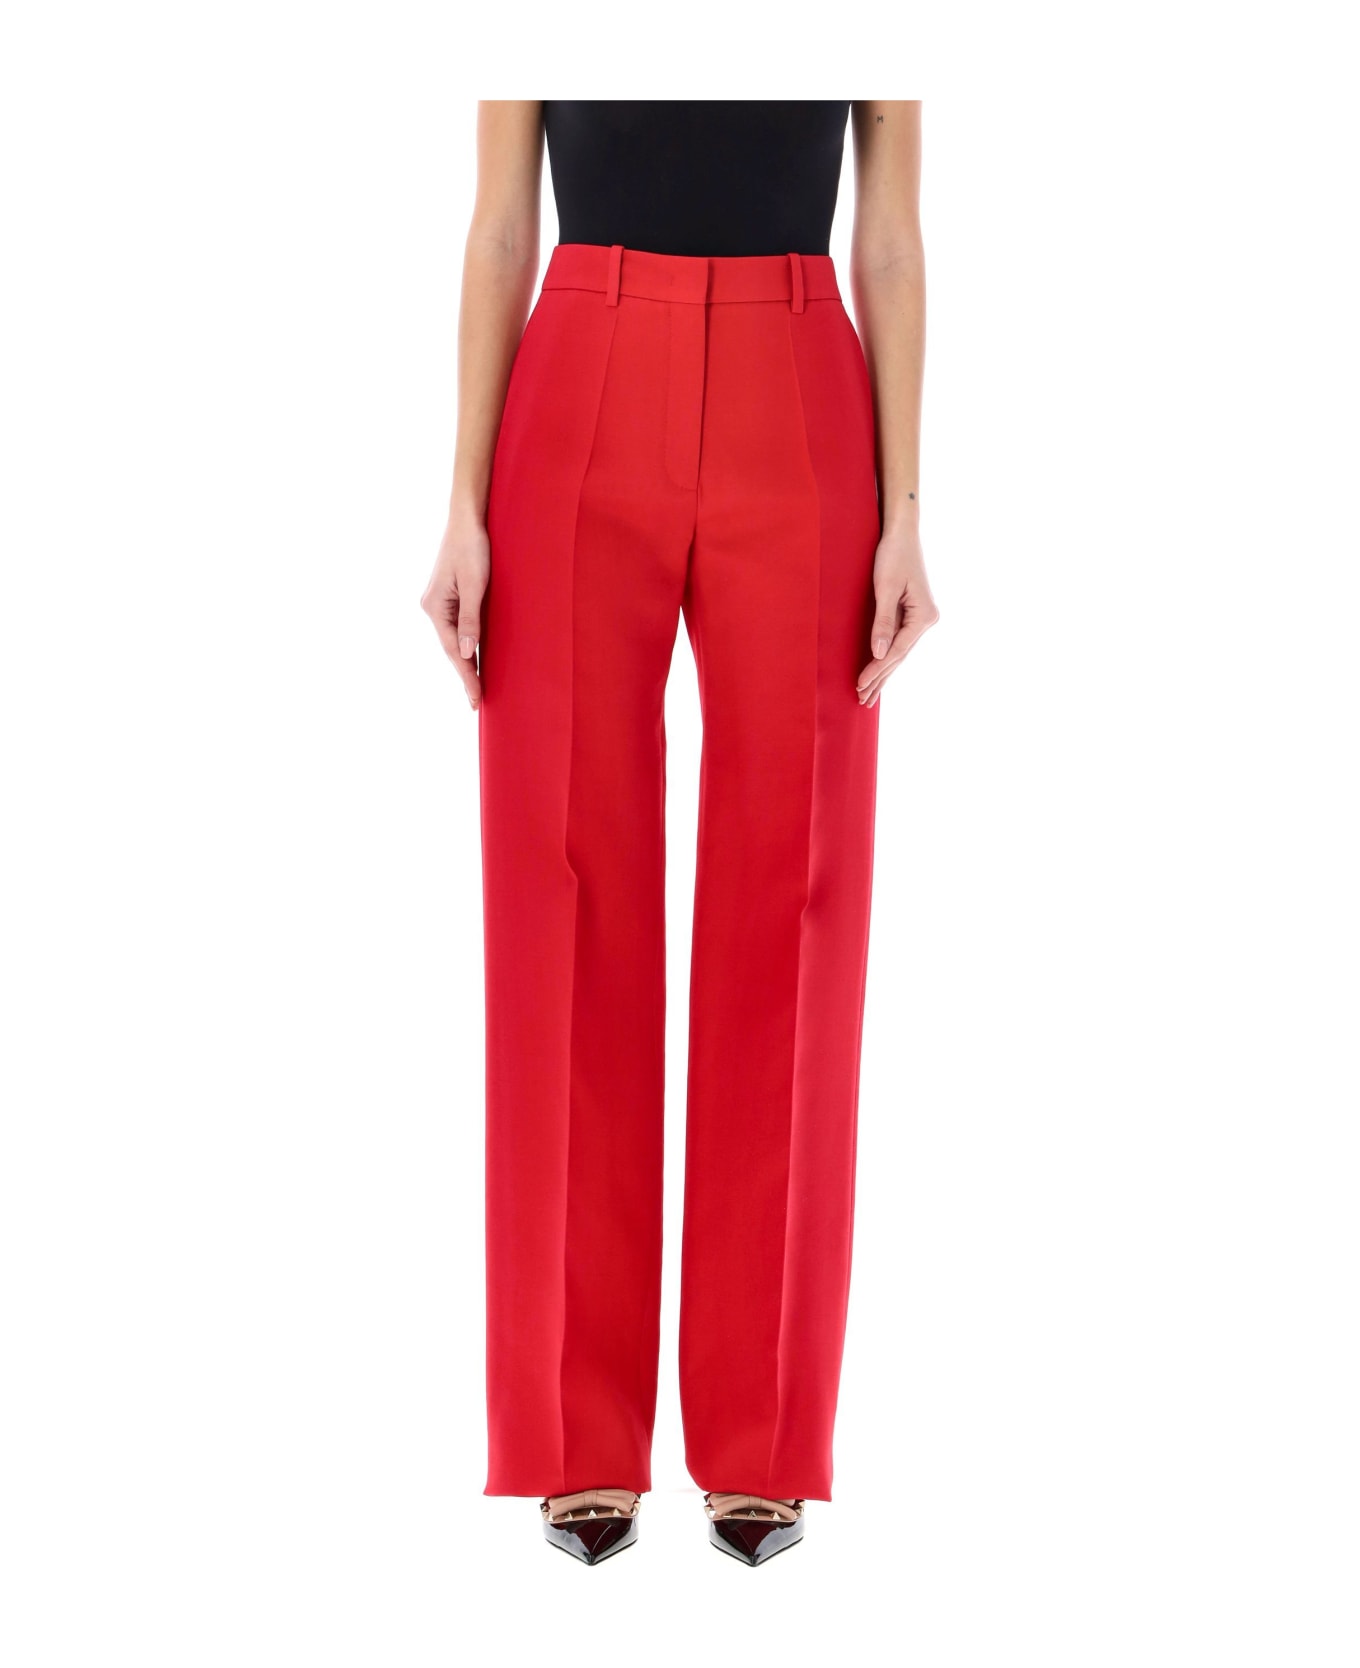 Valentino Garavani Crepe Couture Trousers - RED